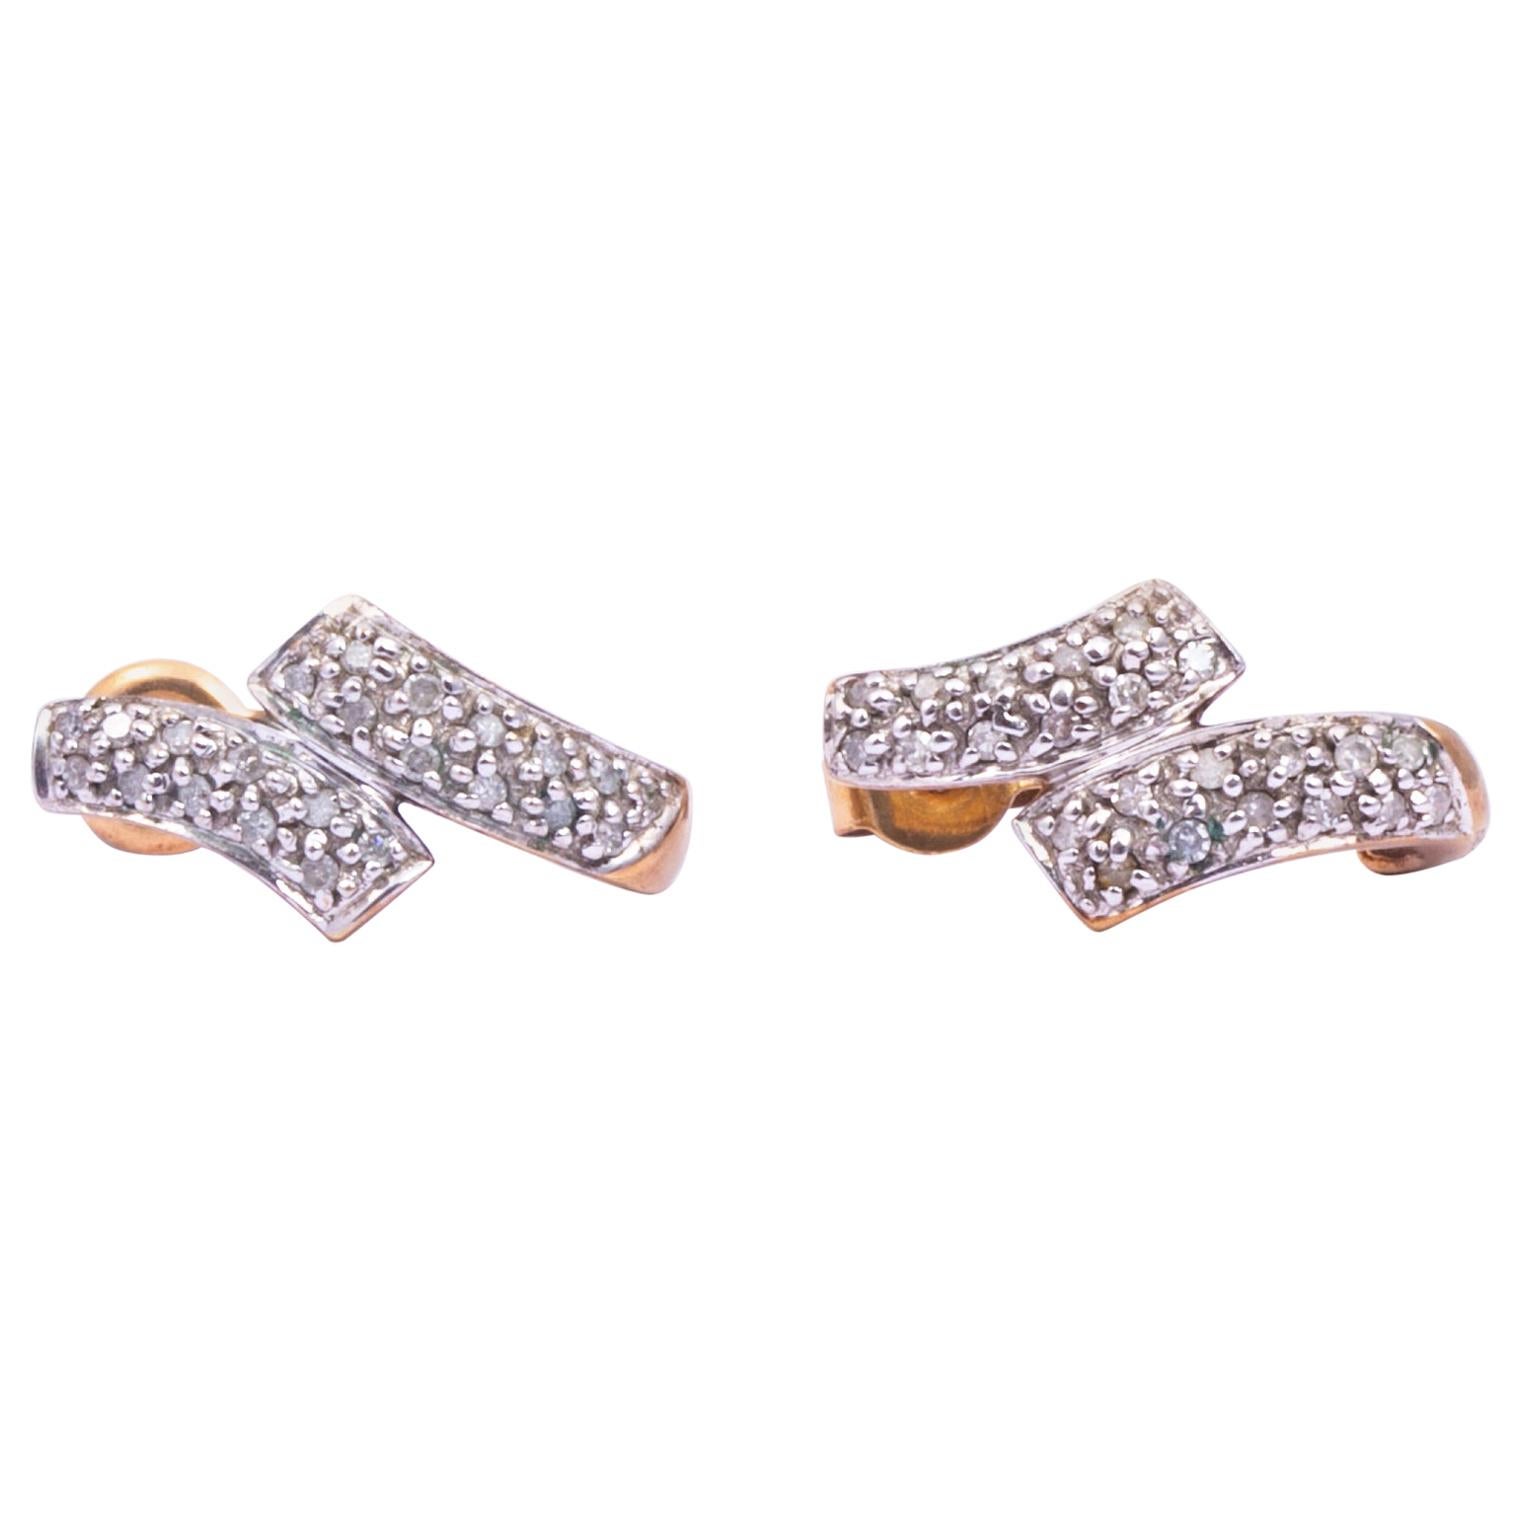 Vintage Diamond 9 Carat Gold and Platinum Stud Earrings